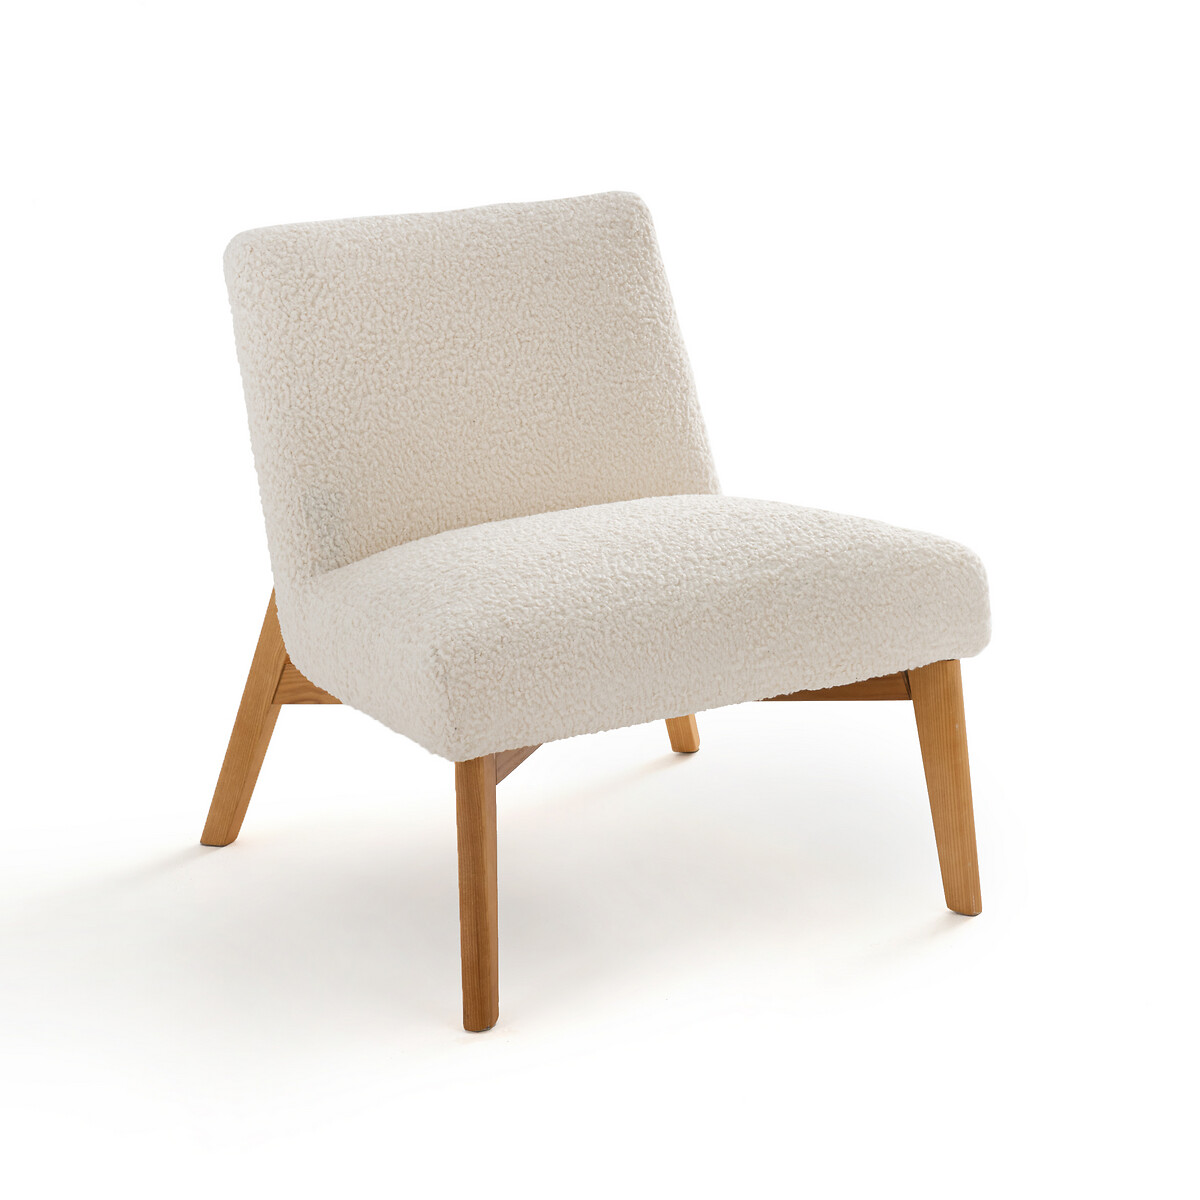 Кресло из малой пряжи Jimi единый размер бежевый кресло качалка дизайнерское jimi единый размер белый